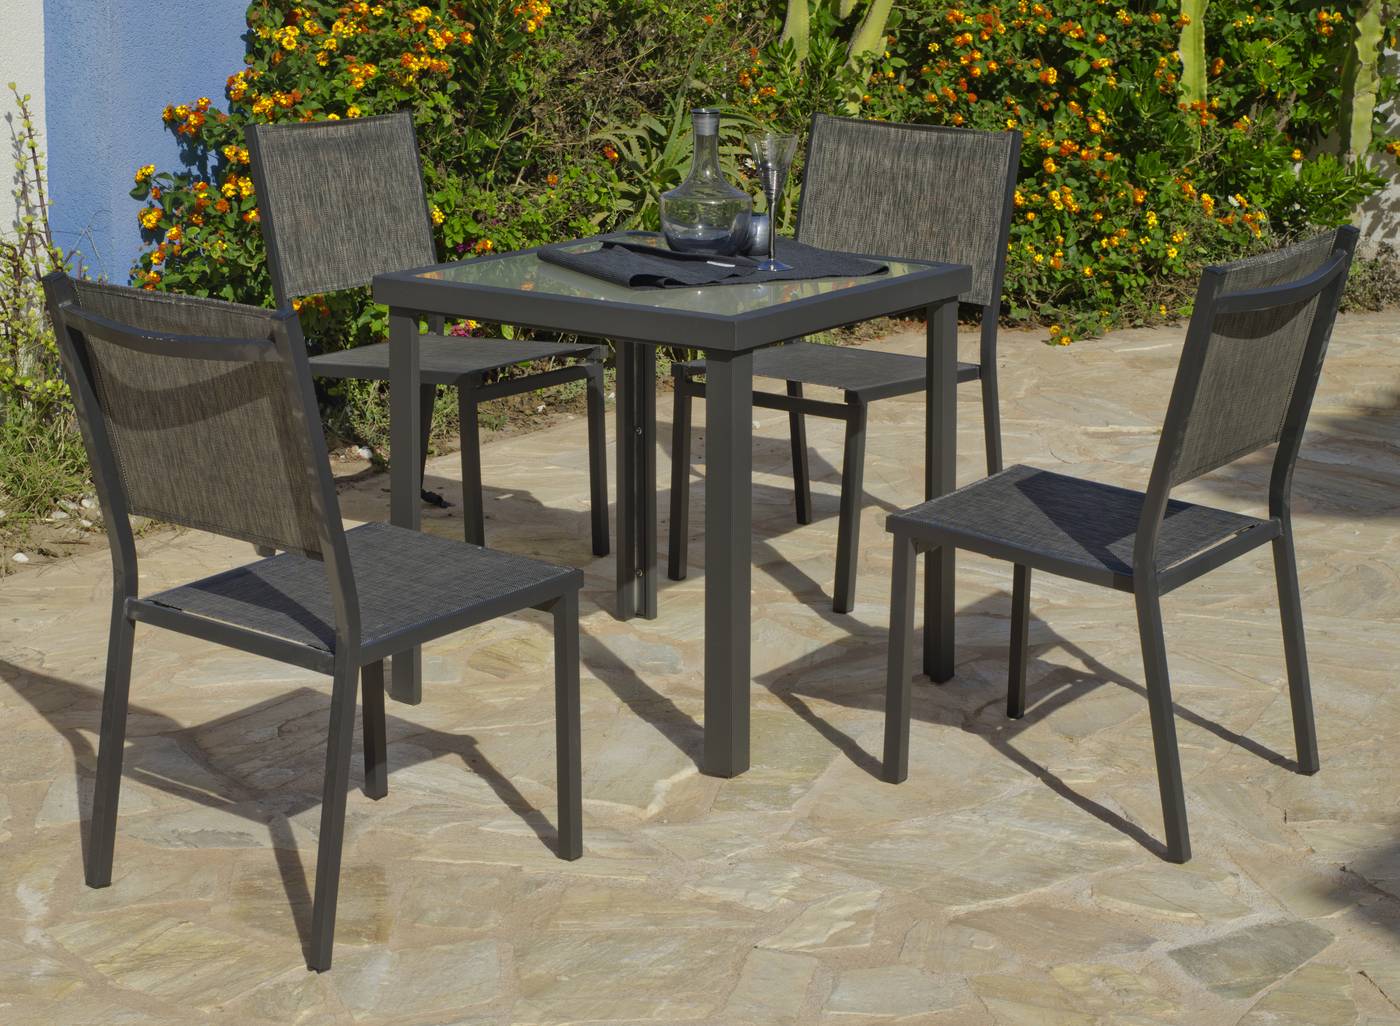 Conjunto de aluminio color antracita: 1 mesa cuadrada de 70 cm. + 4 sillas de alumino y textilen